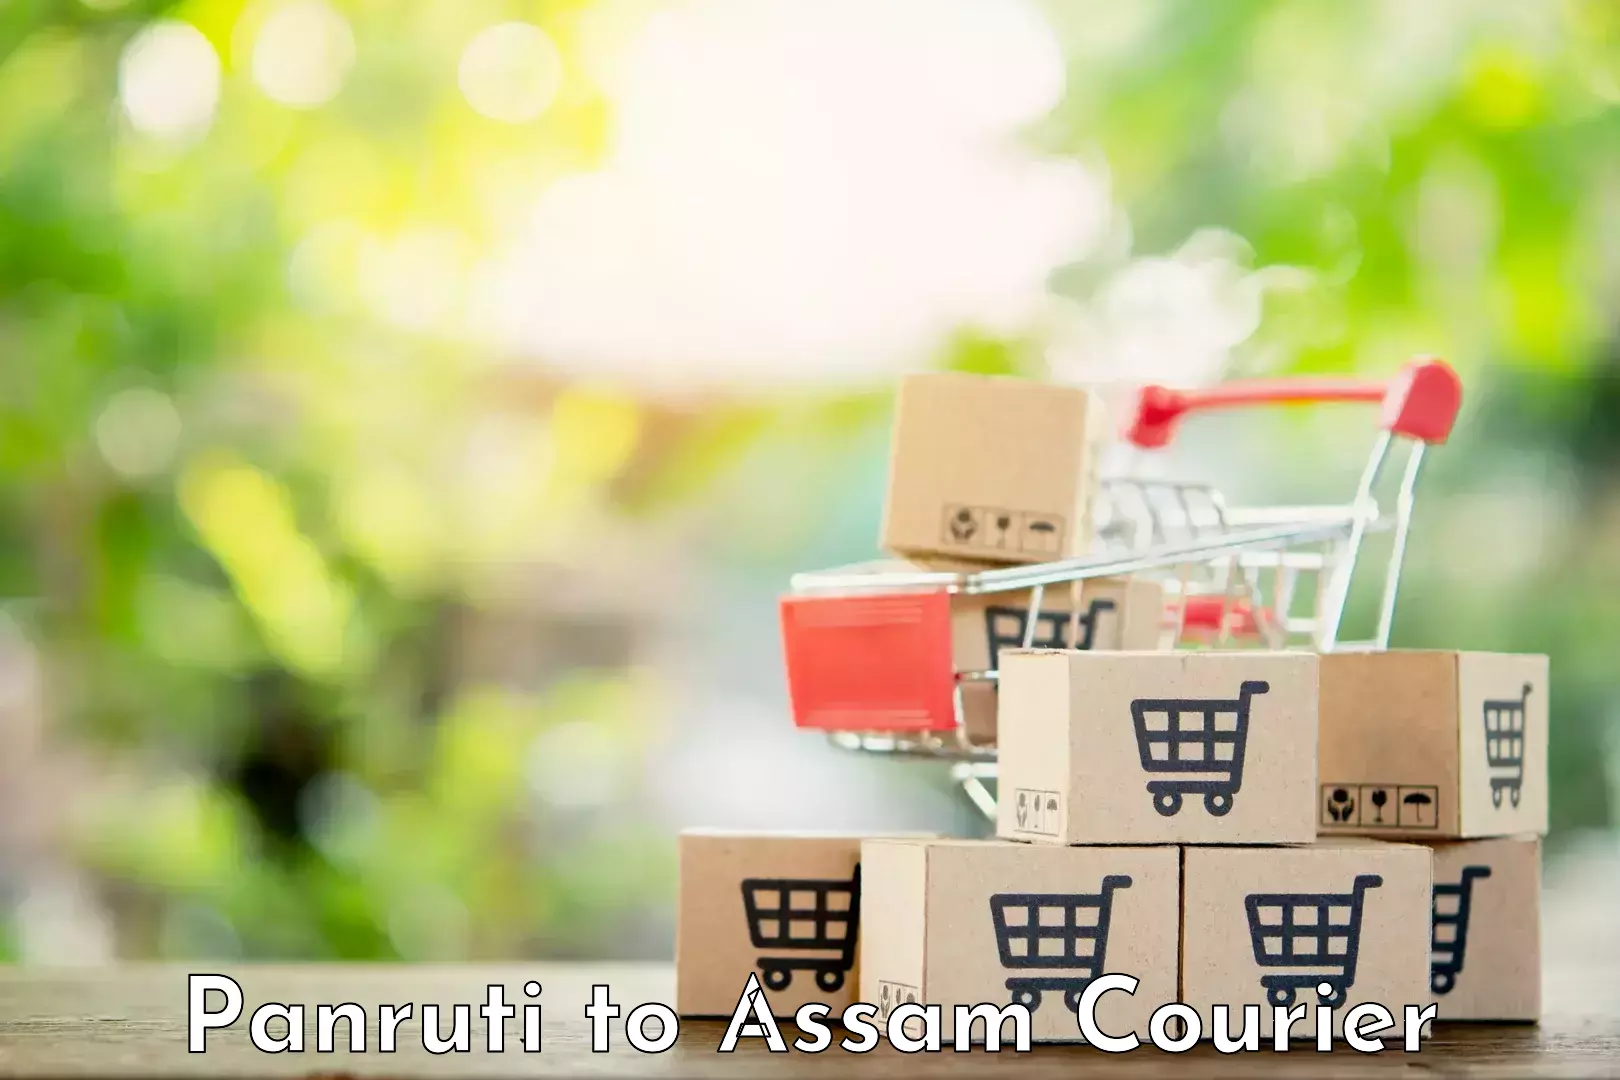 On-demand courier Panruti to Assam